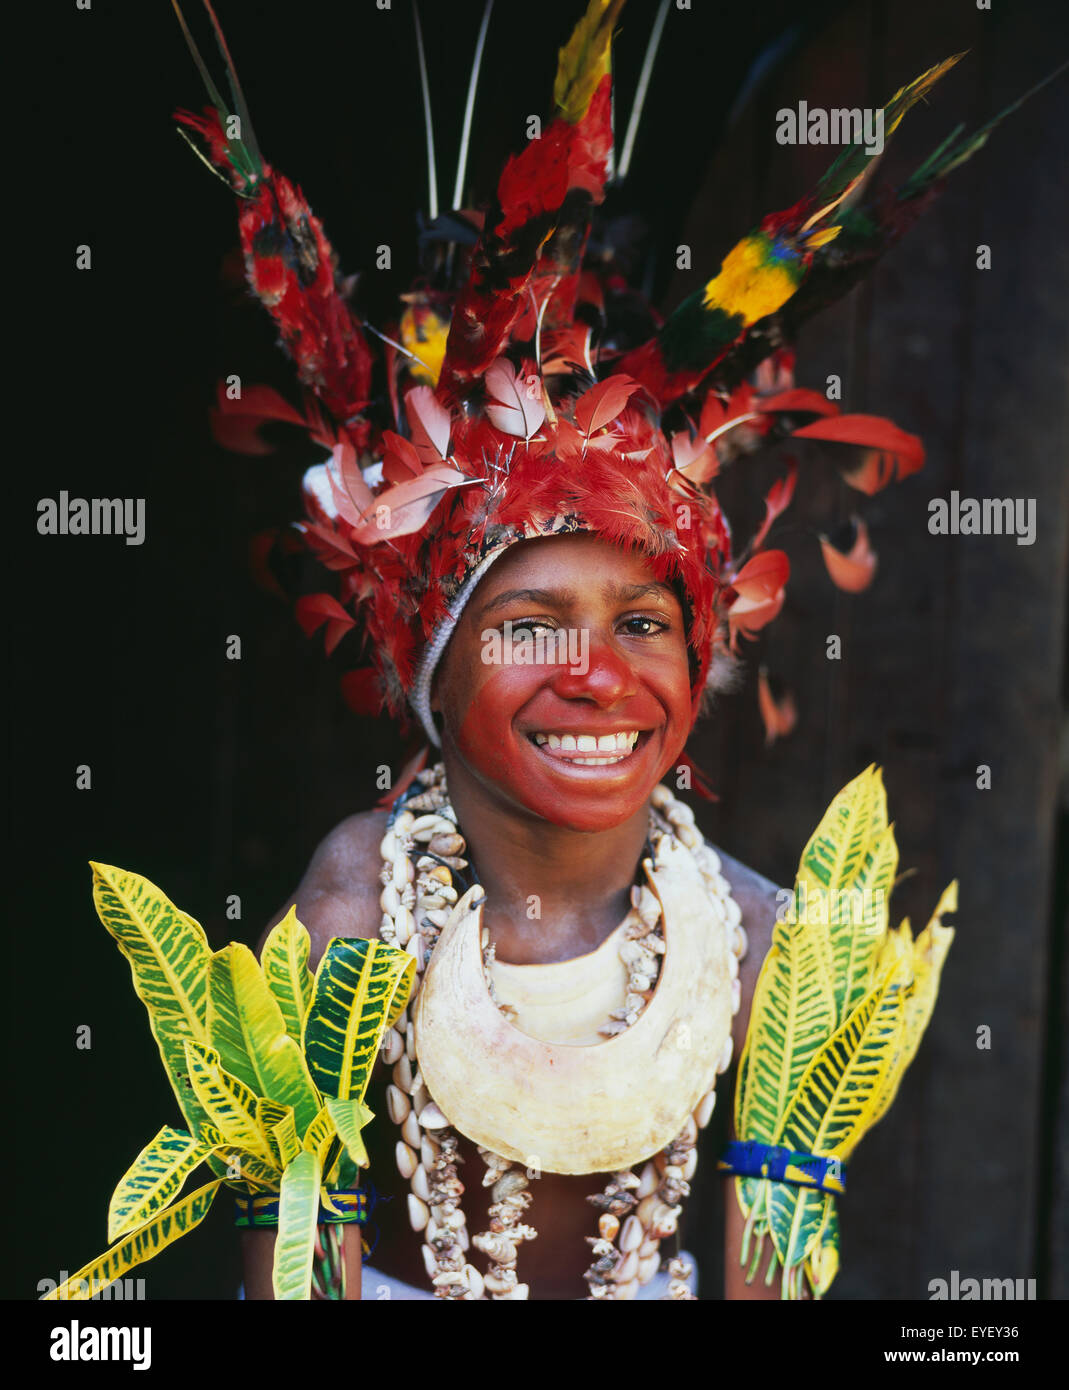 Jeune fille en costume traditionnel écossais à l'Goroka Show ; Goroka, Papouasie Nouvelle Guinée Banque D'Images